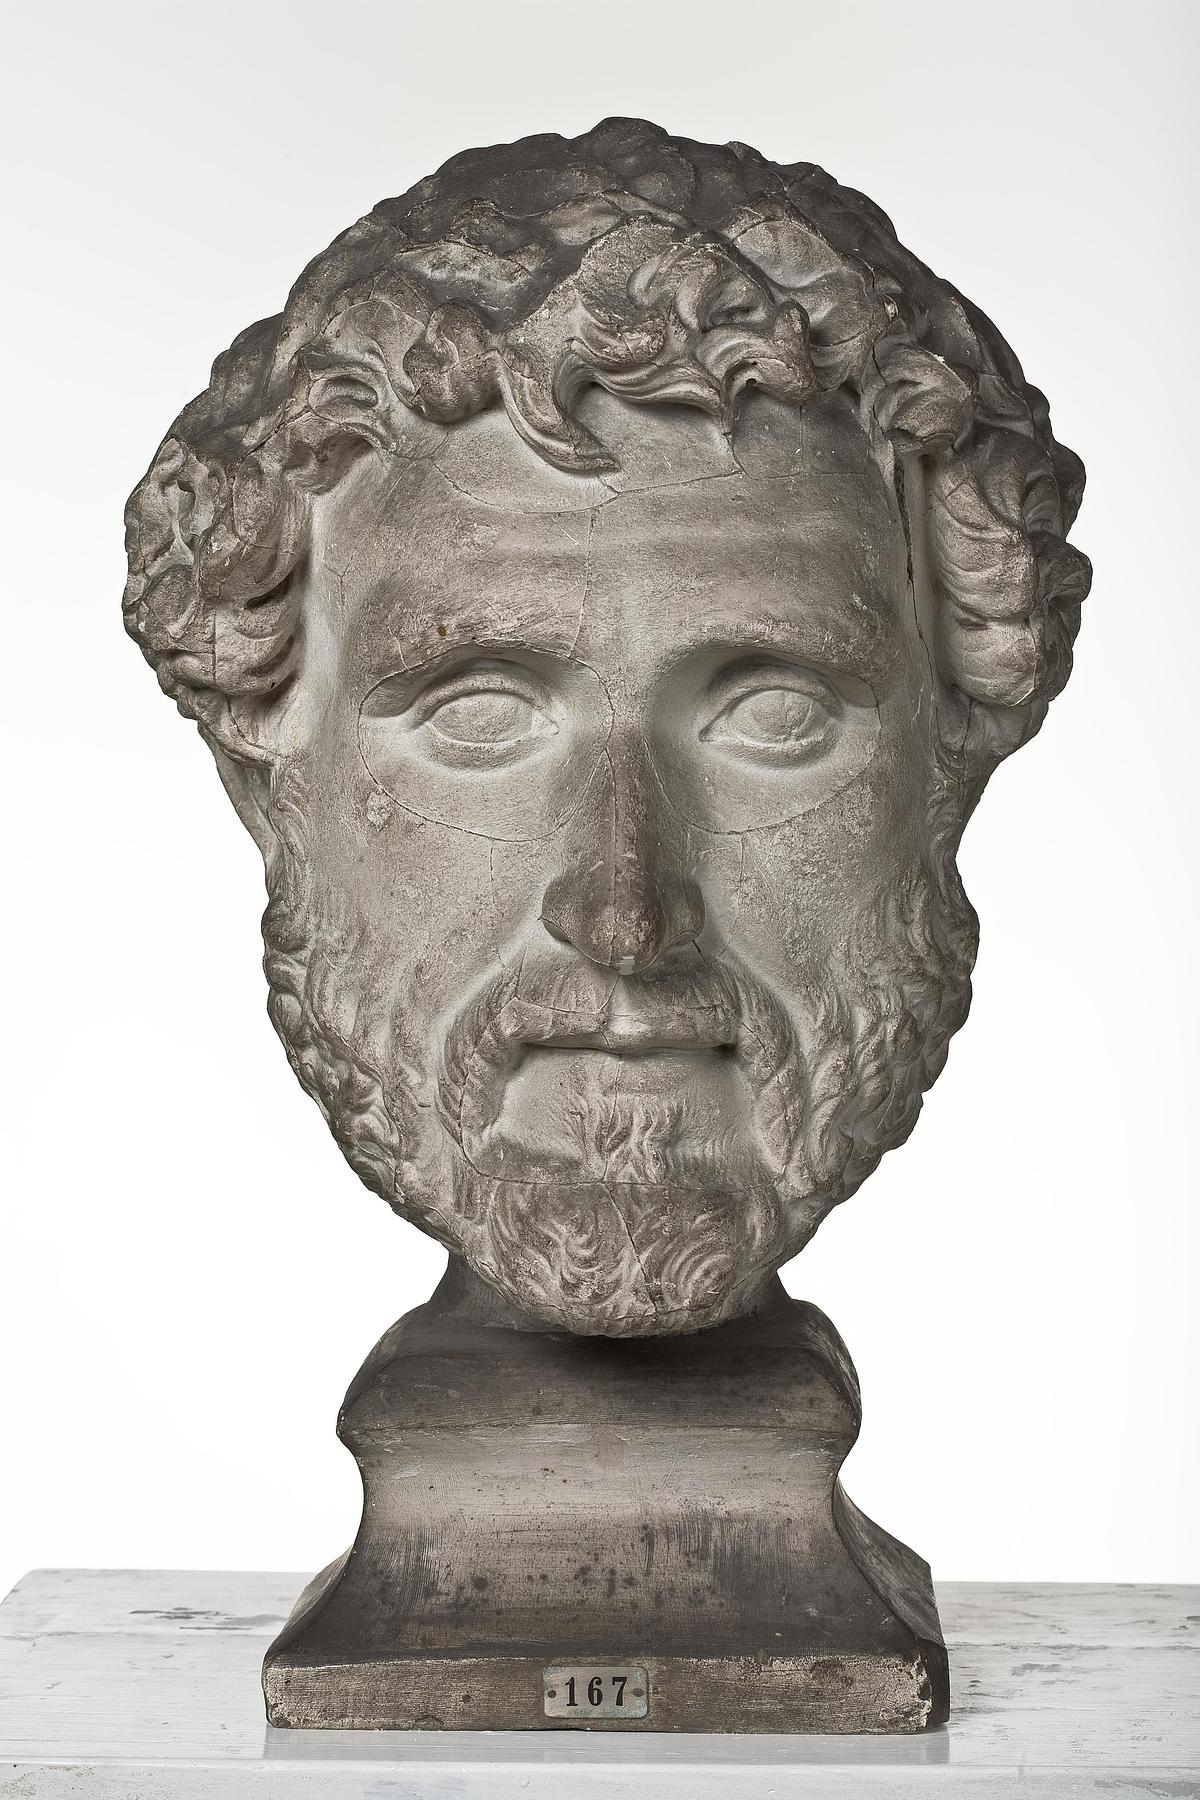 Antoninus Pius, L167